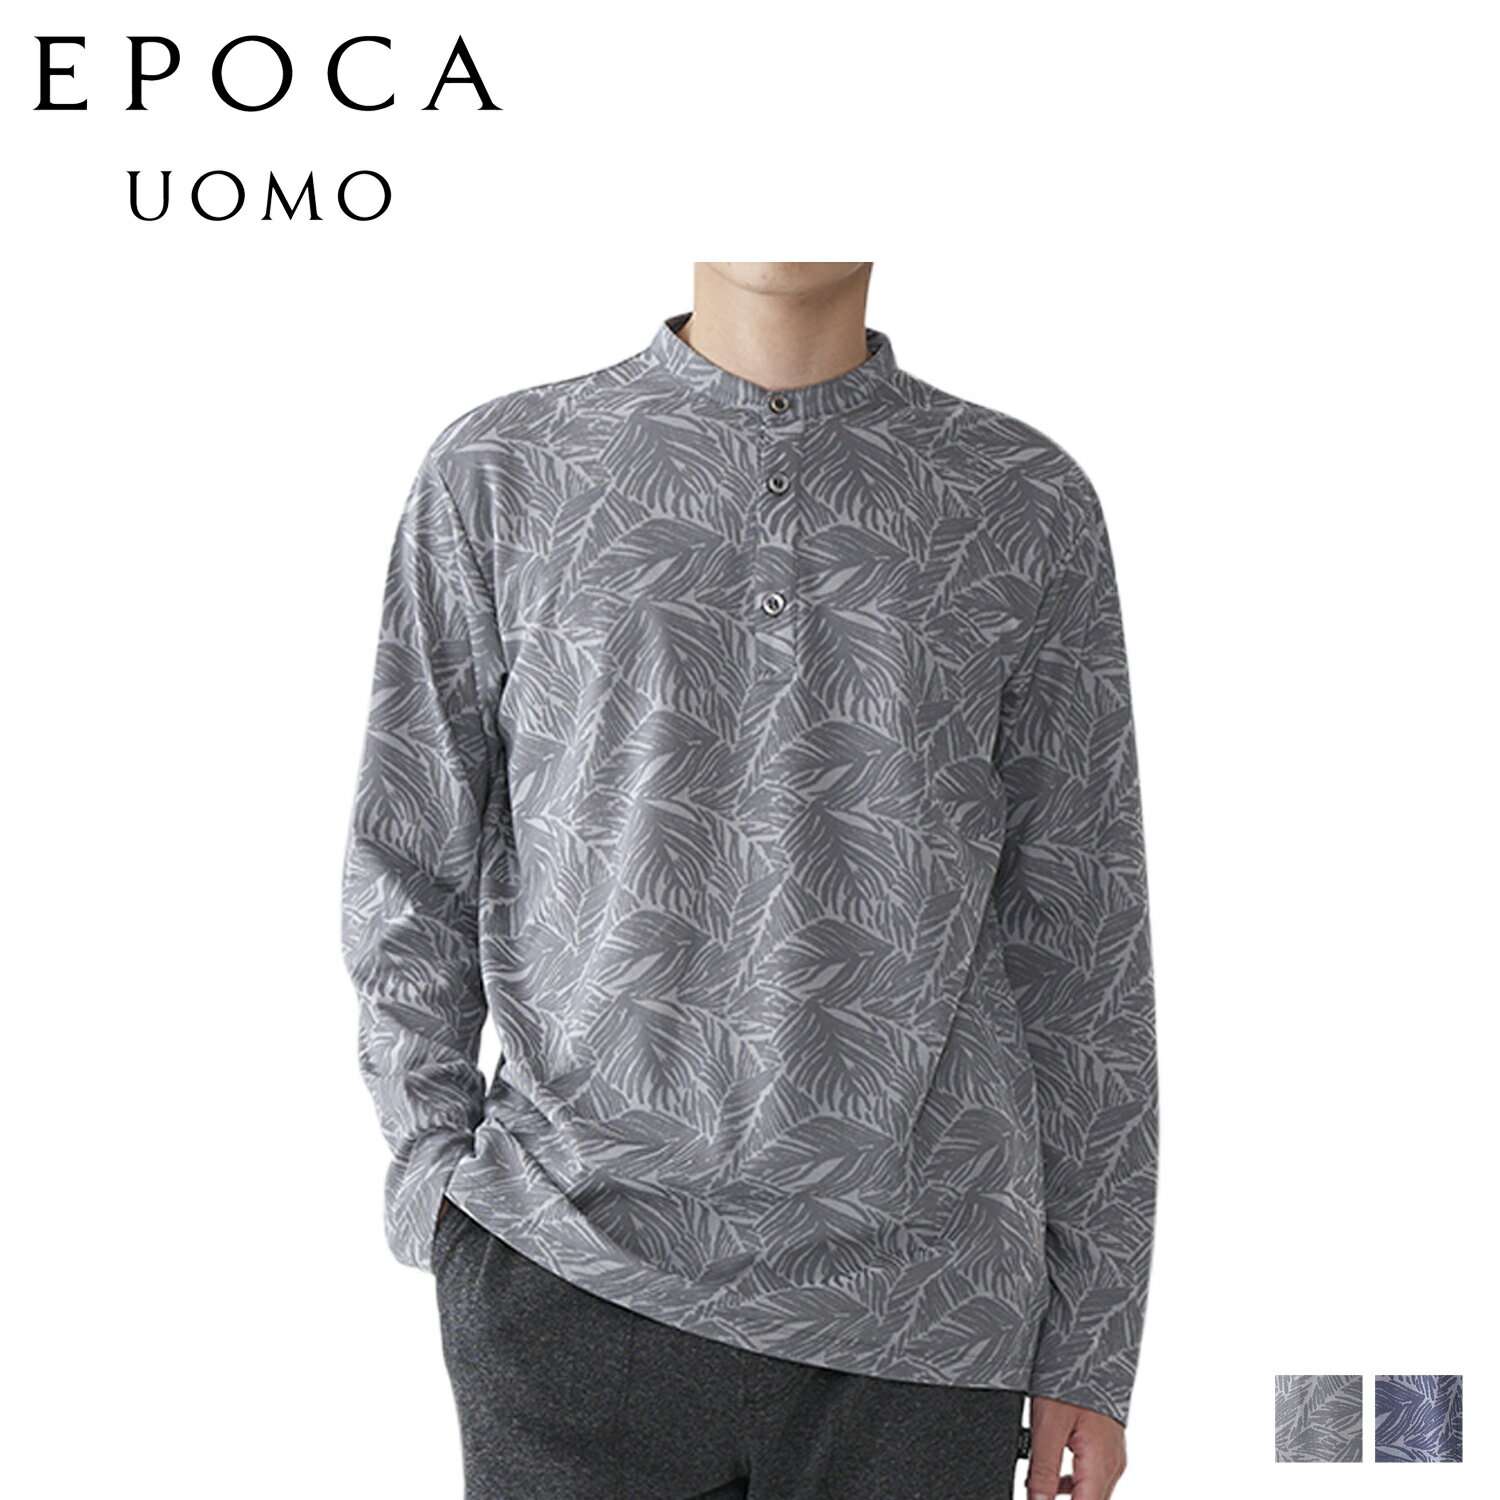 エポカ ウォモ EPOCA UOMO Tシャツ 長袖 ロンT カットソー プルオーバー バンドカラー メンズ PULLOVER BAND COLLAR CUT AND SEW グレー ネイビー 0389-25